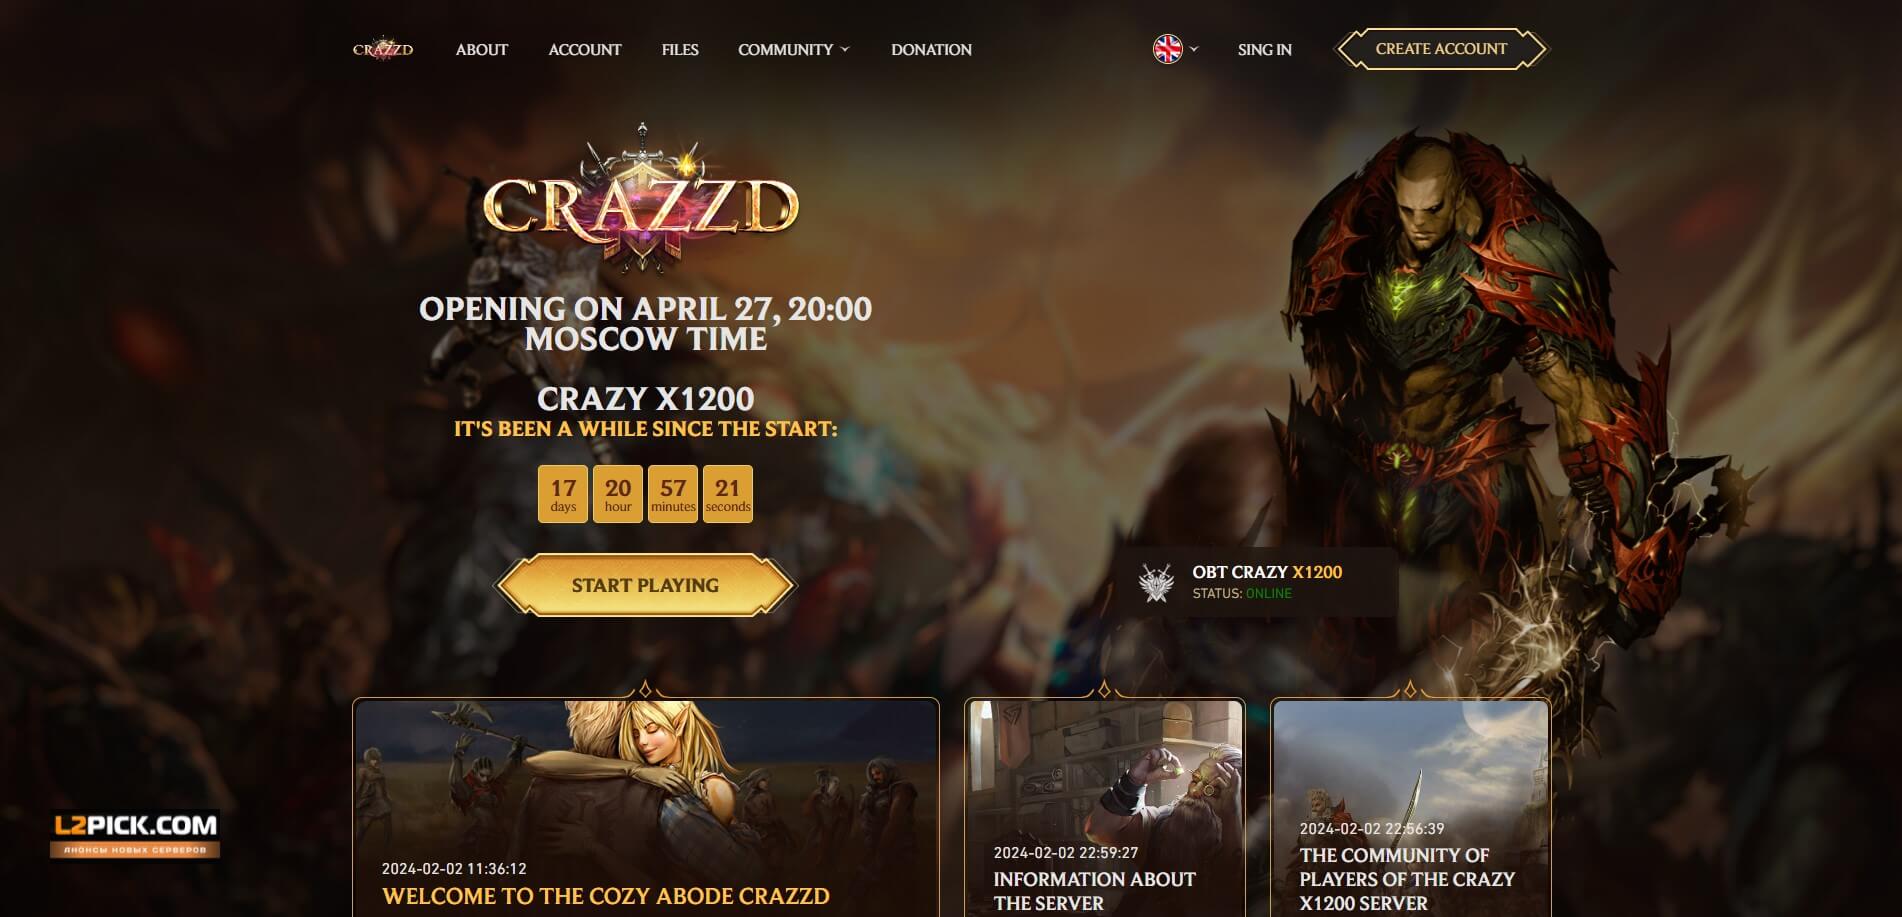 💥🔥 Bem-vindo ao servidor Lineage 2 Interlude com taxas x1200 em crazzd.com! Pronto para batalhas intensas? 🔥💥